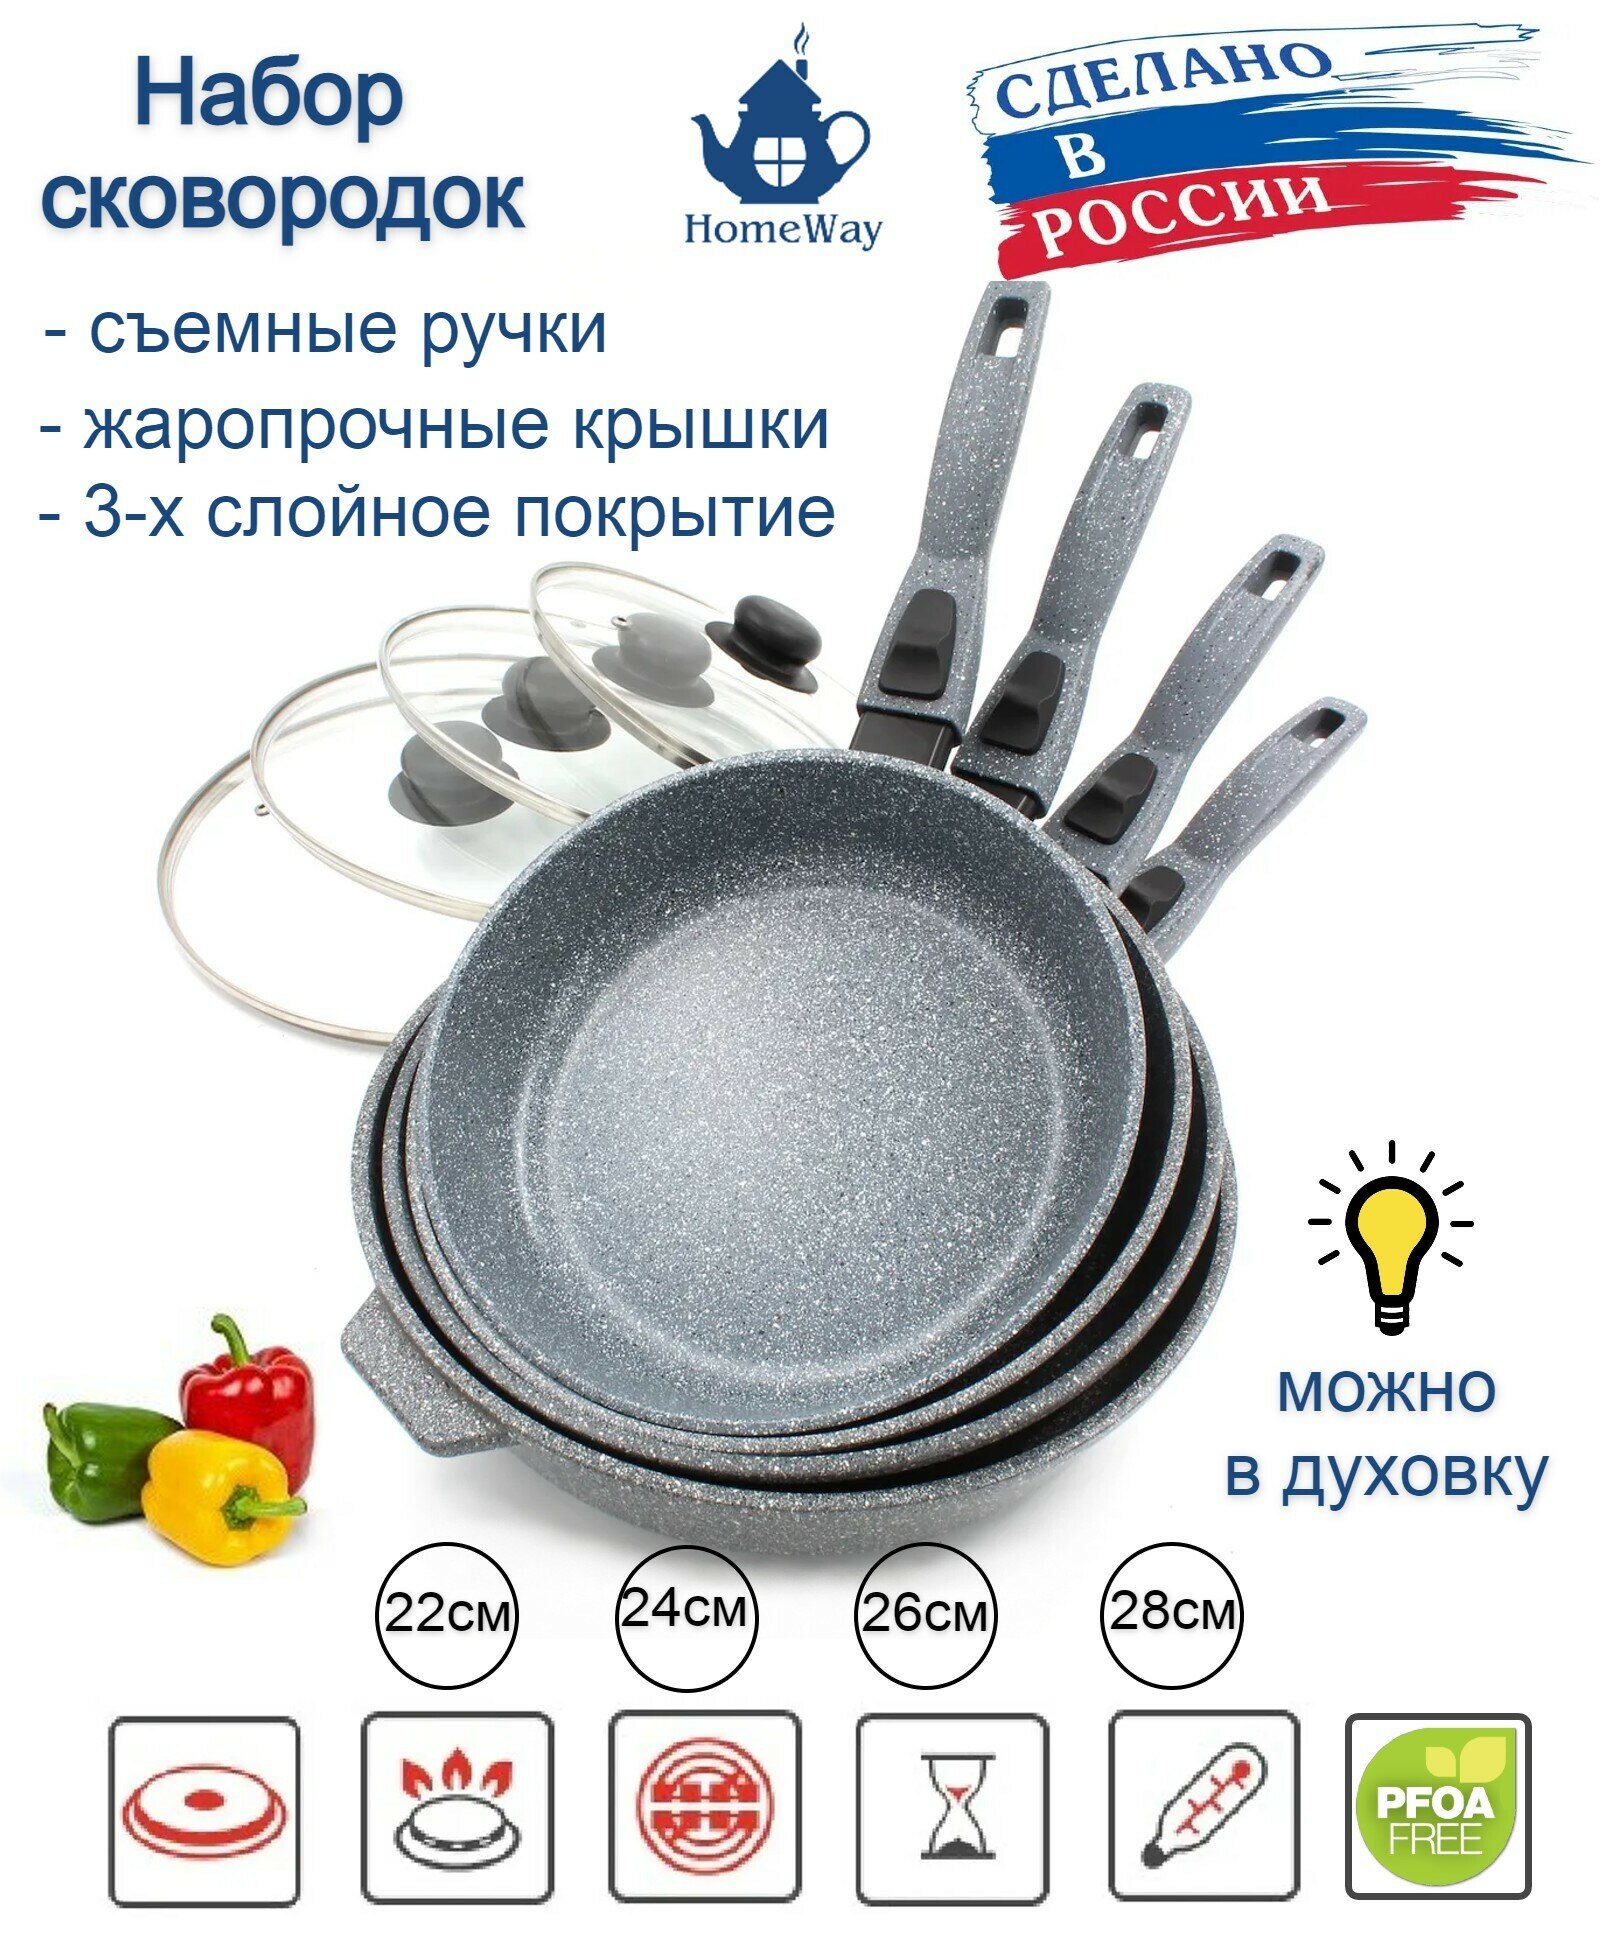 Набор сковородок с крышками, керамическое антипригарное покрытие 4шт.(22см/24см/26см/28см), съемные ручки, Макси+ комплект. HomeWay